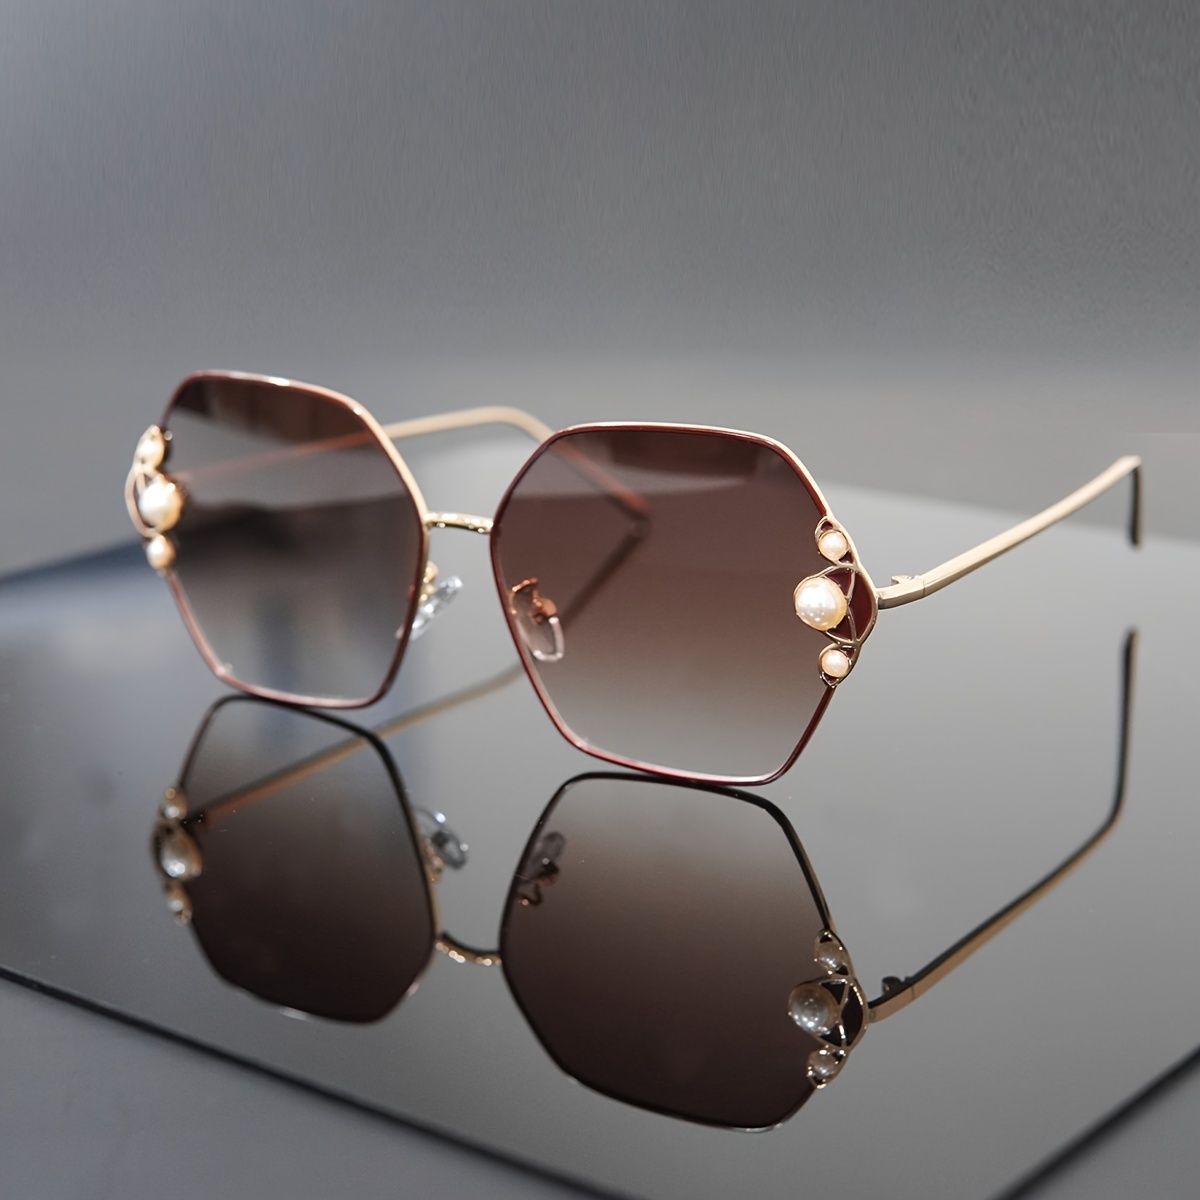 1pc Female & Unisex Holiday & Street Style Fashion Sunglasses